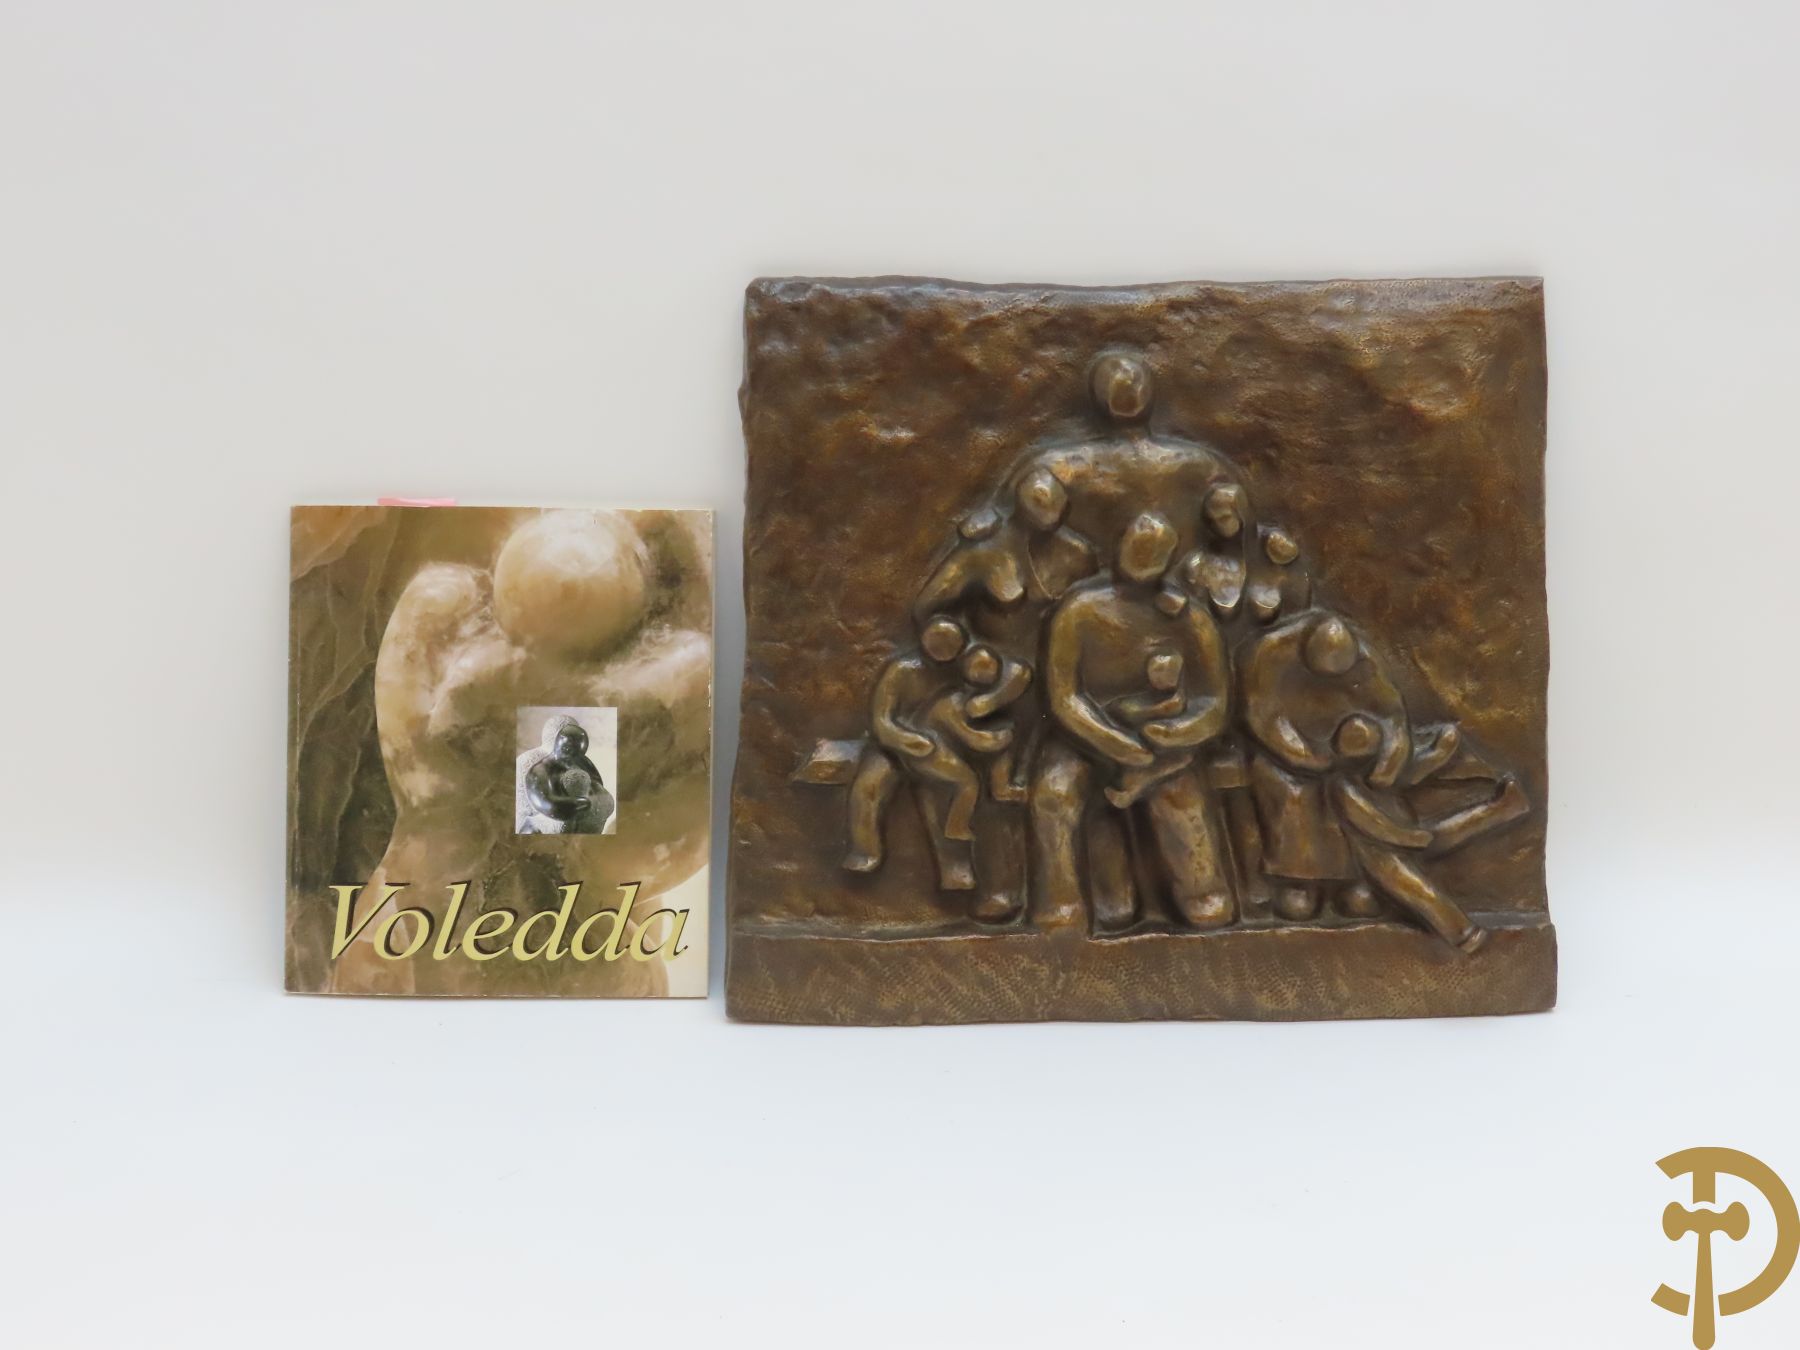 VOLEDDA (Francoise) get. 'Familietafereel op de bank' bronzen basrelief, genummerd 1/8 - Met bijhorende documentatie